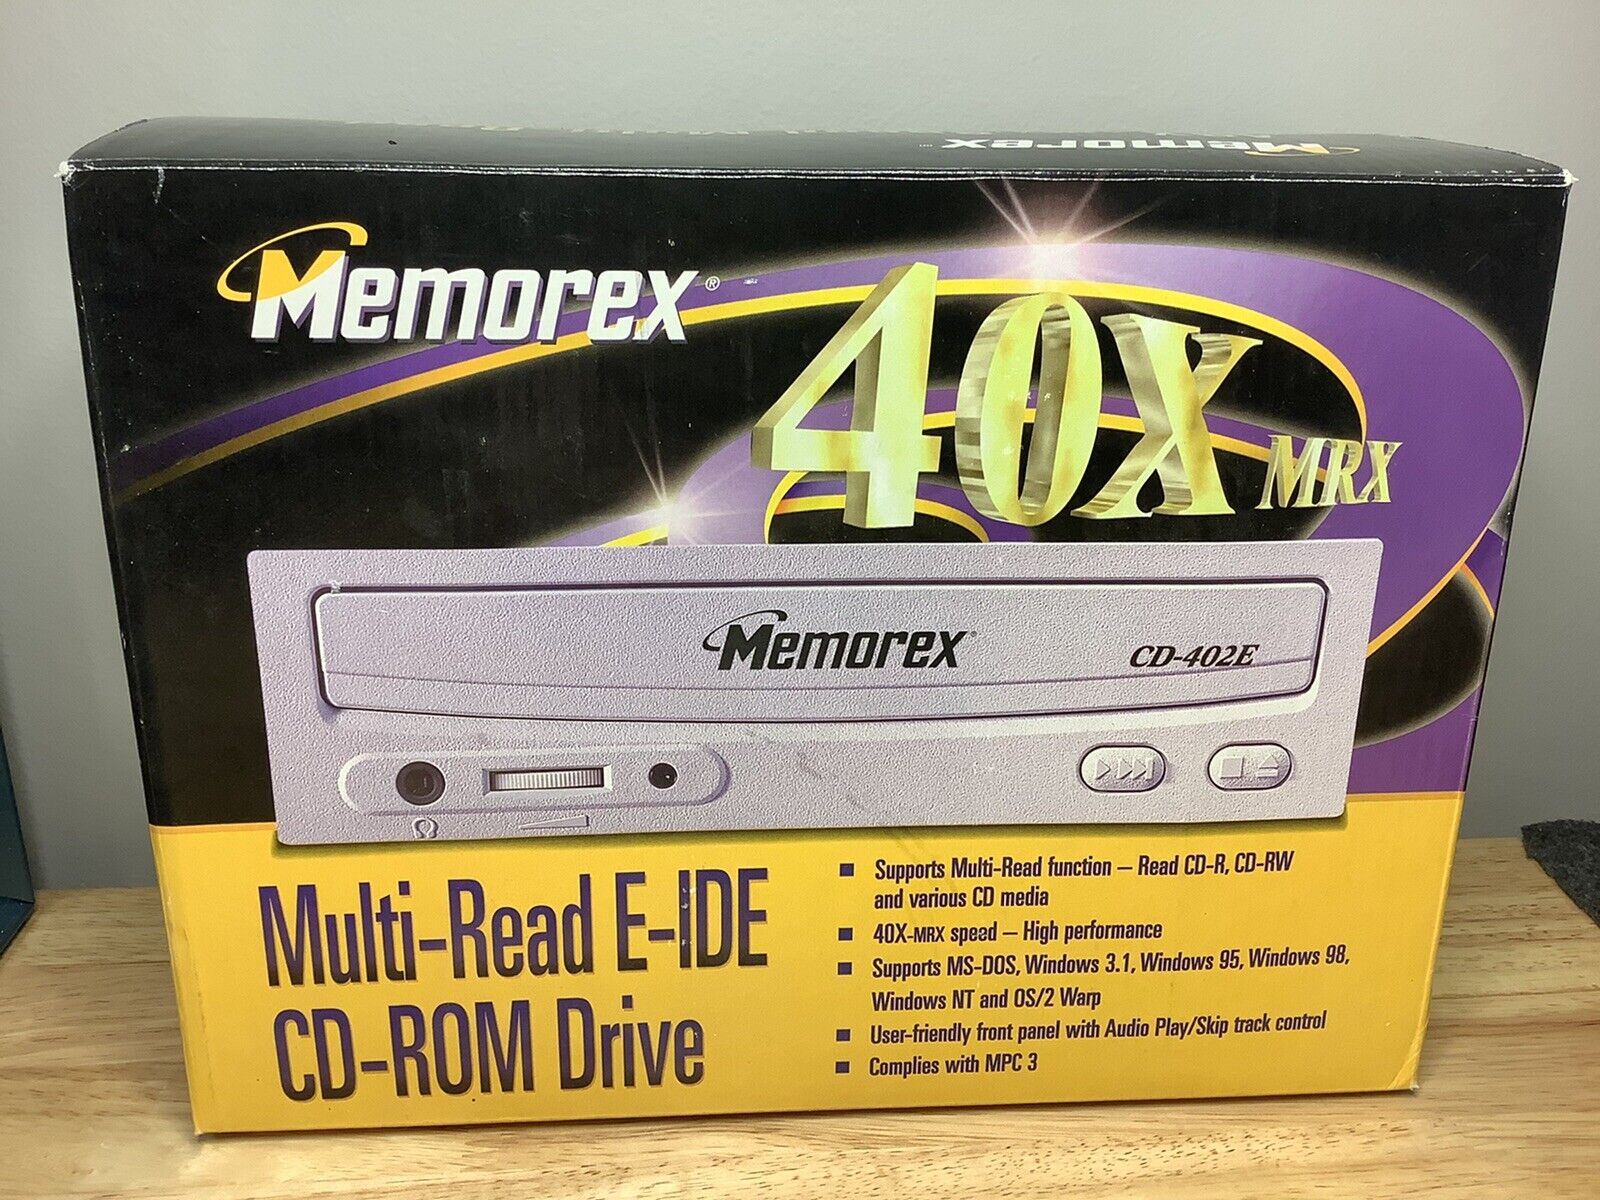 how do i attach a memorex dvd writer to a lenovo computer?